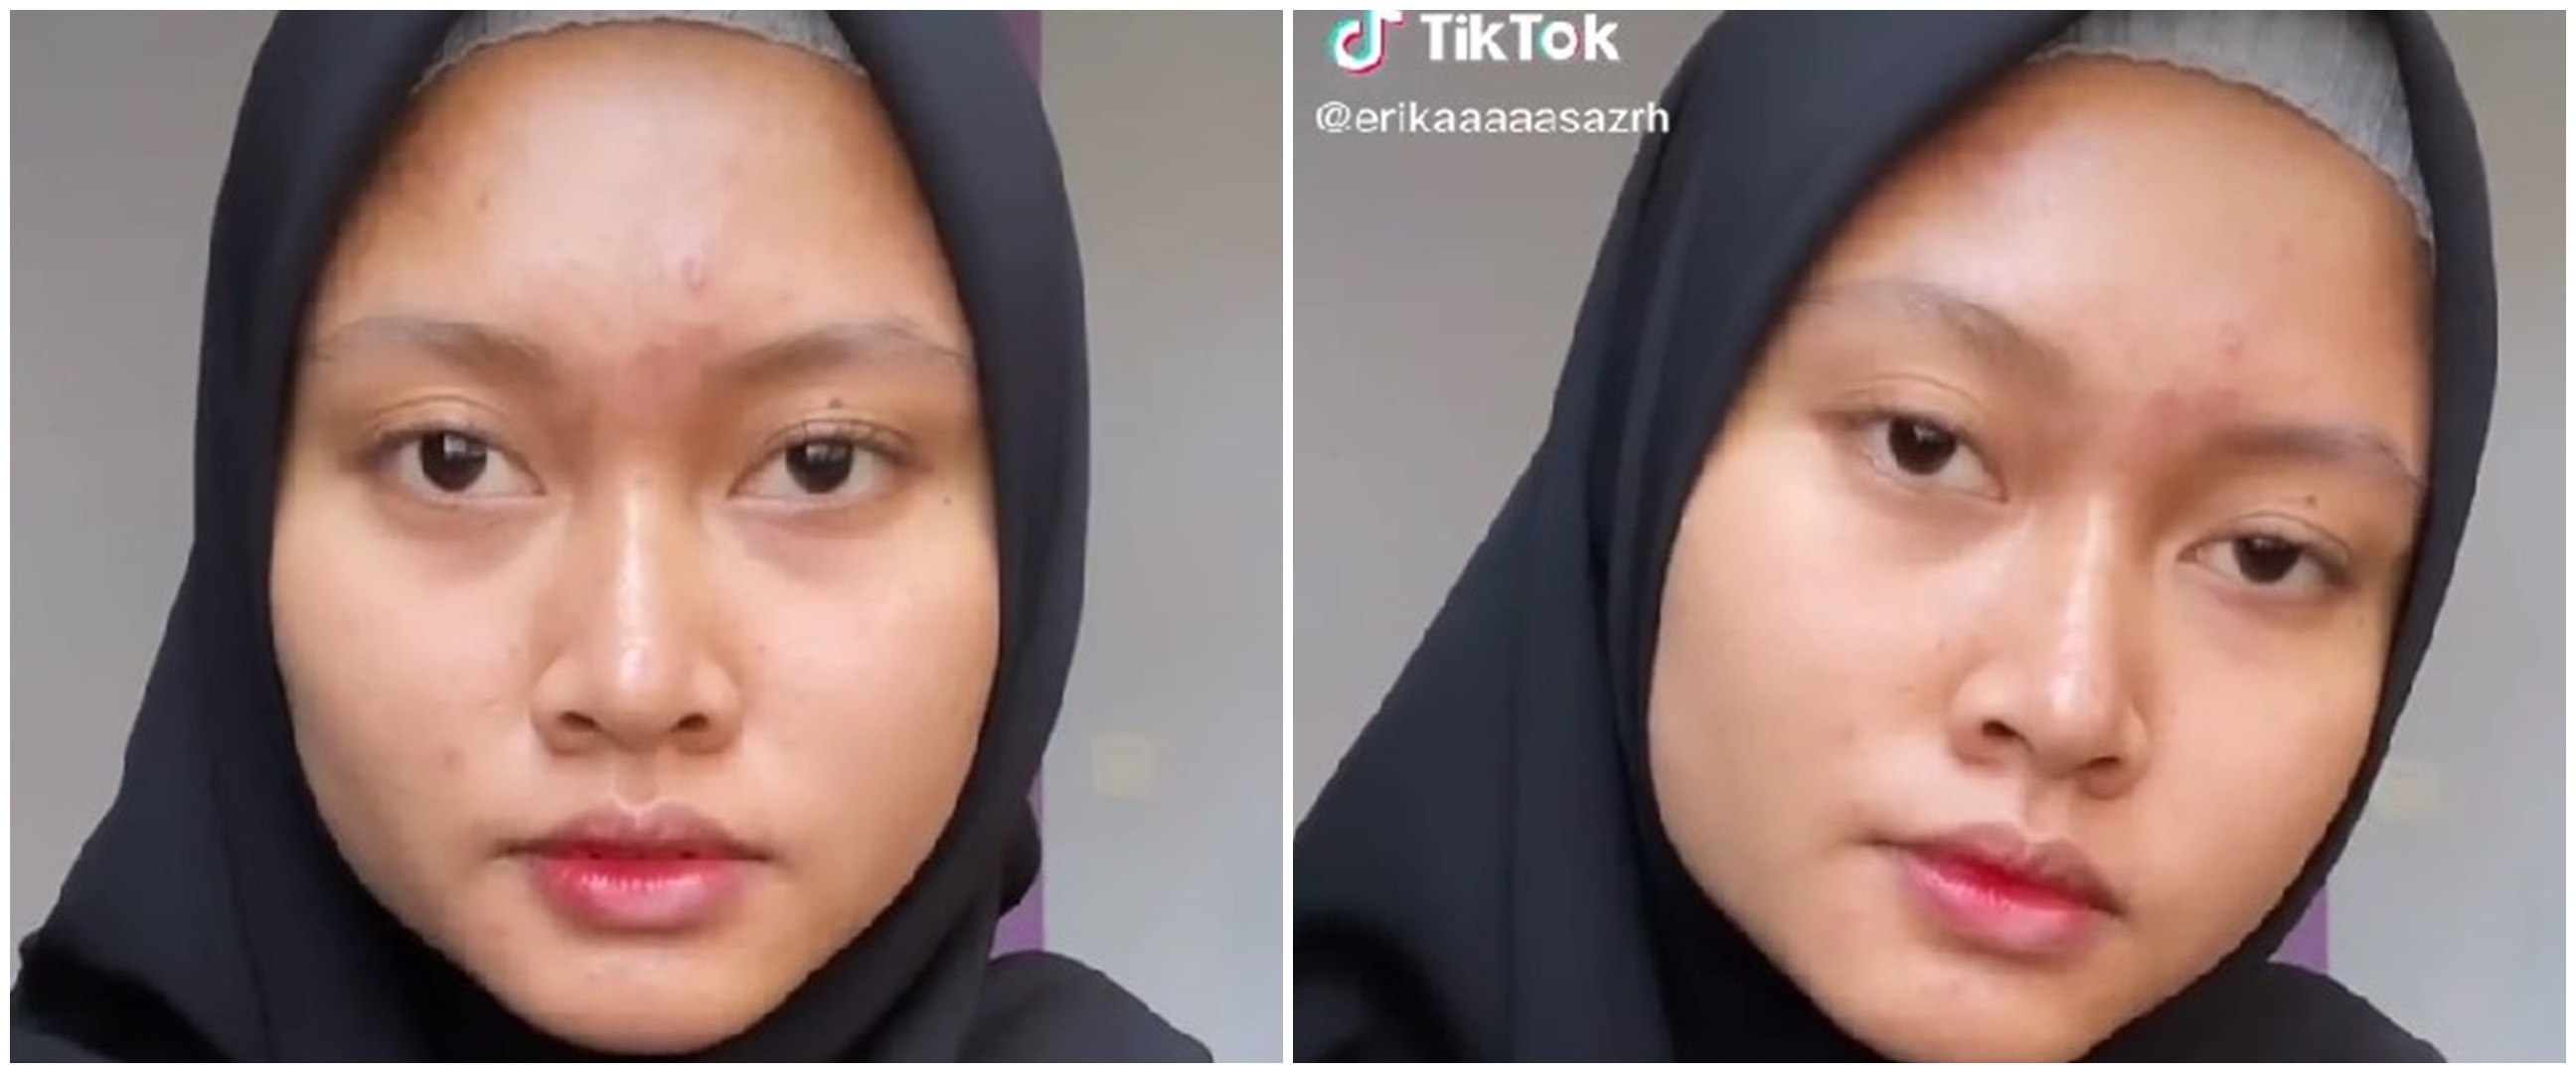 Wanita ini pamerkan makeup ibunya yang kerja jadi MUA kampung, hasilnya nggak kalah dari profesional